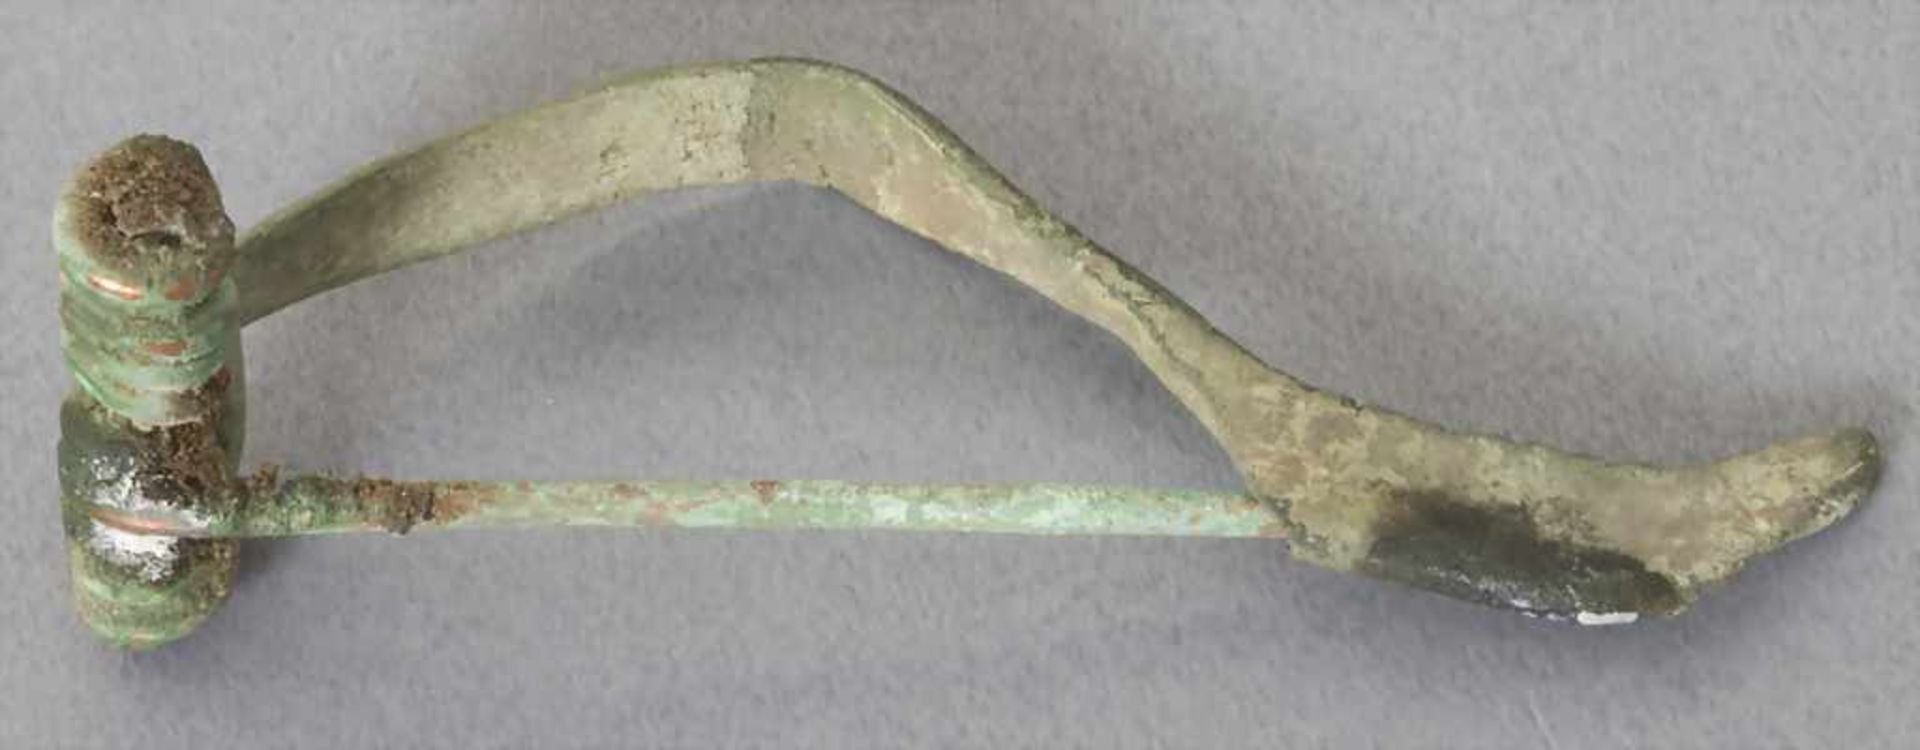 Keltische Fibel / A celtic fibulaMaterial: Bronze,Länge: 4,9 cm,Zustand: gut, alt restauriert, - Bild 3 aus 3